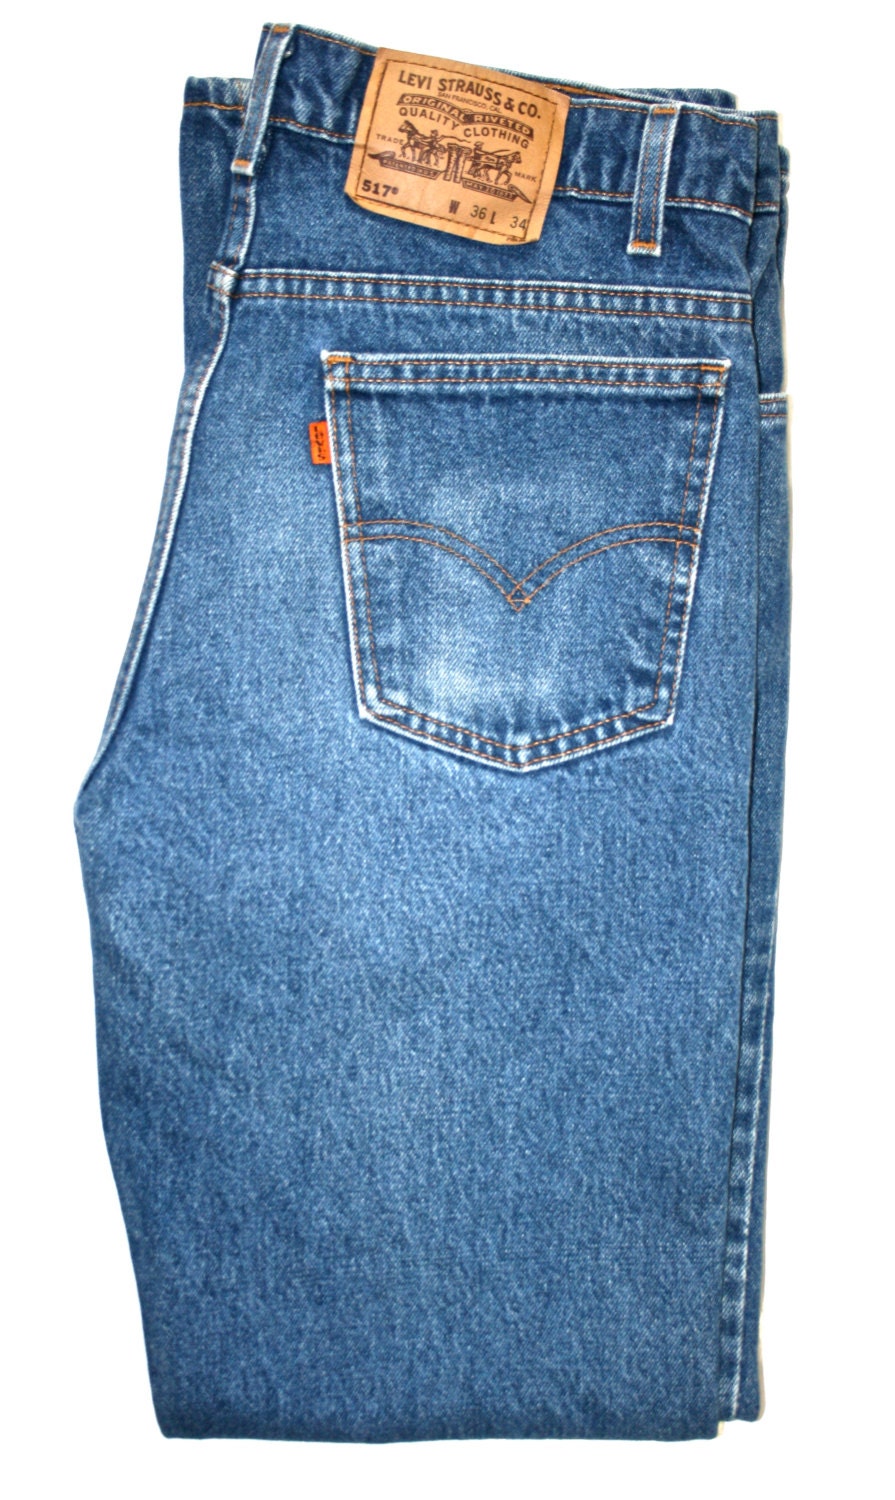 Vintage Levis 517 Orange Tab Jeans Size 36/34 by VintageMensGoods